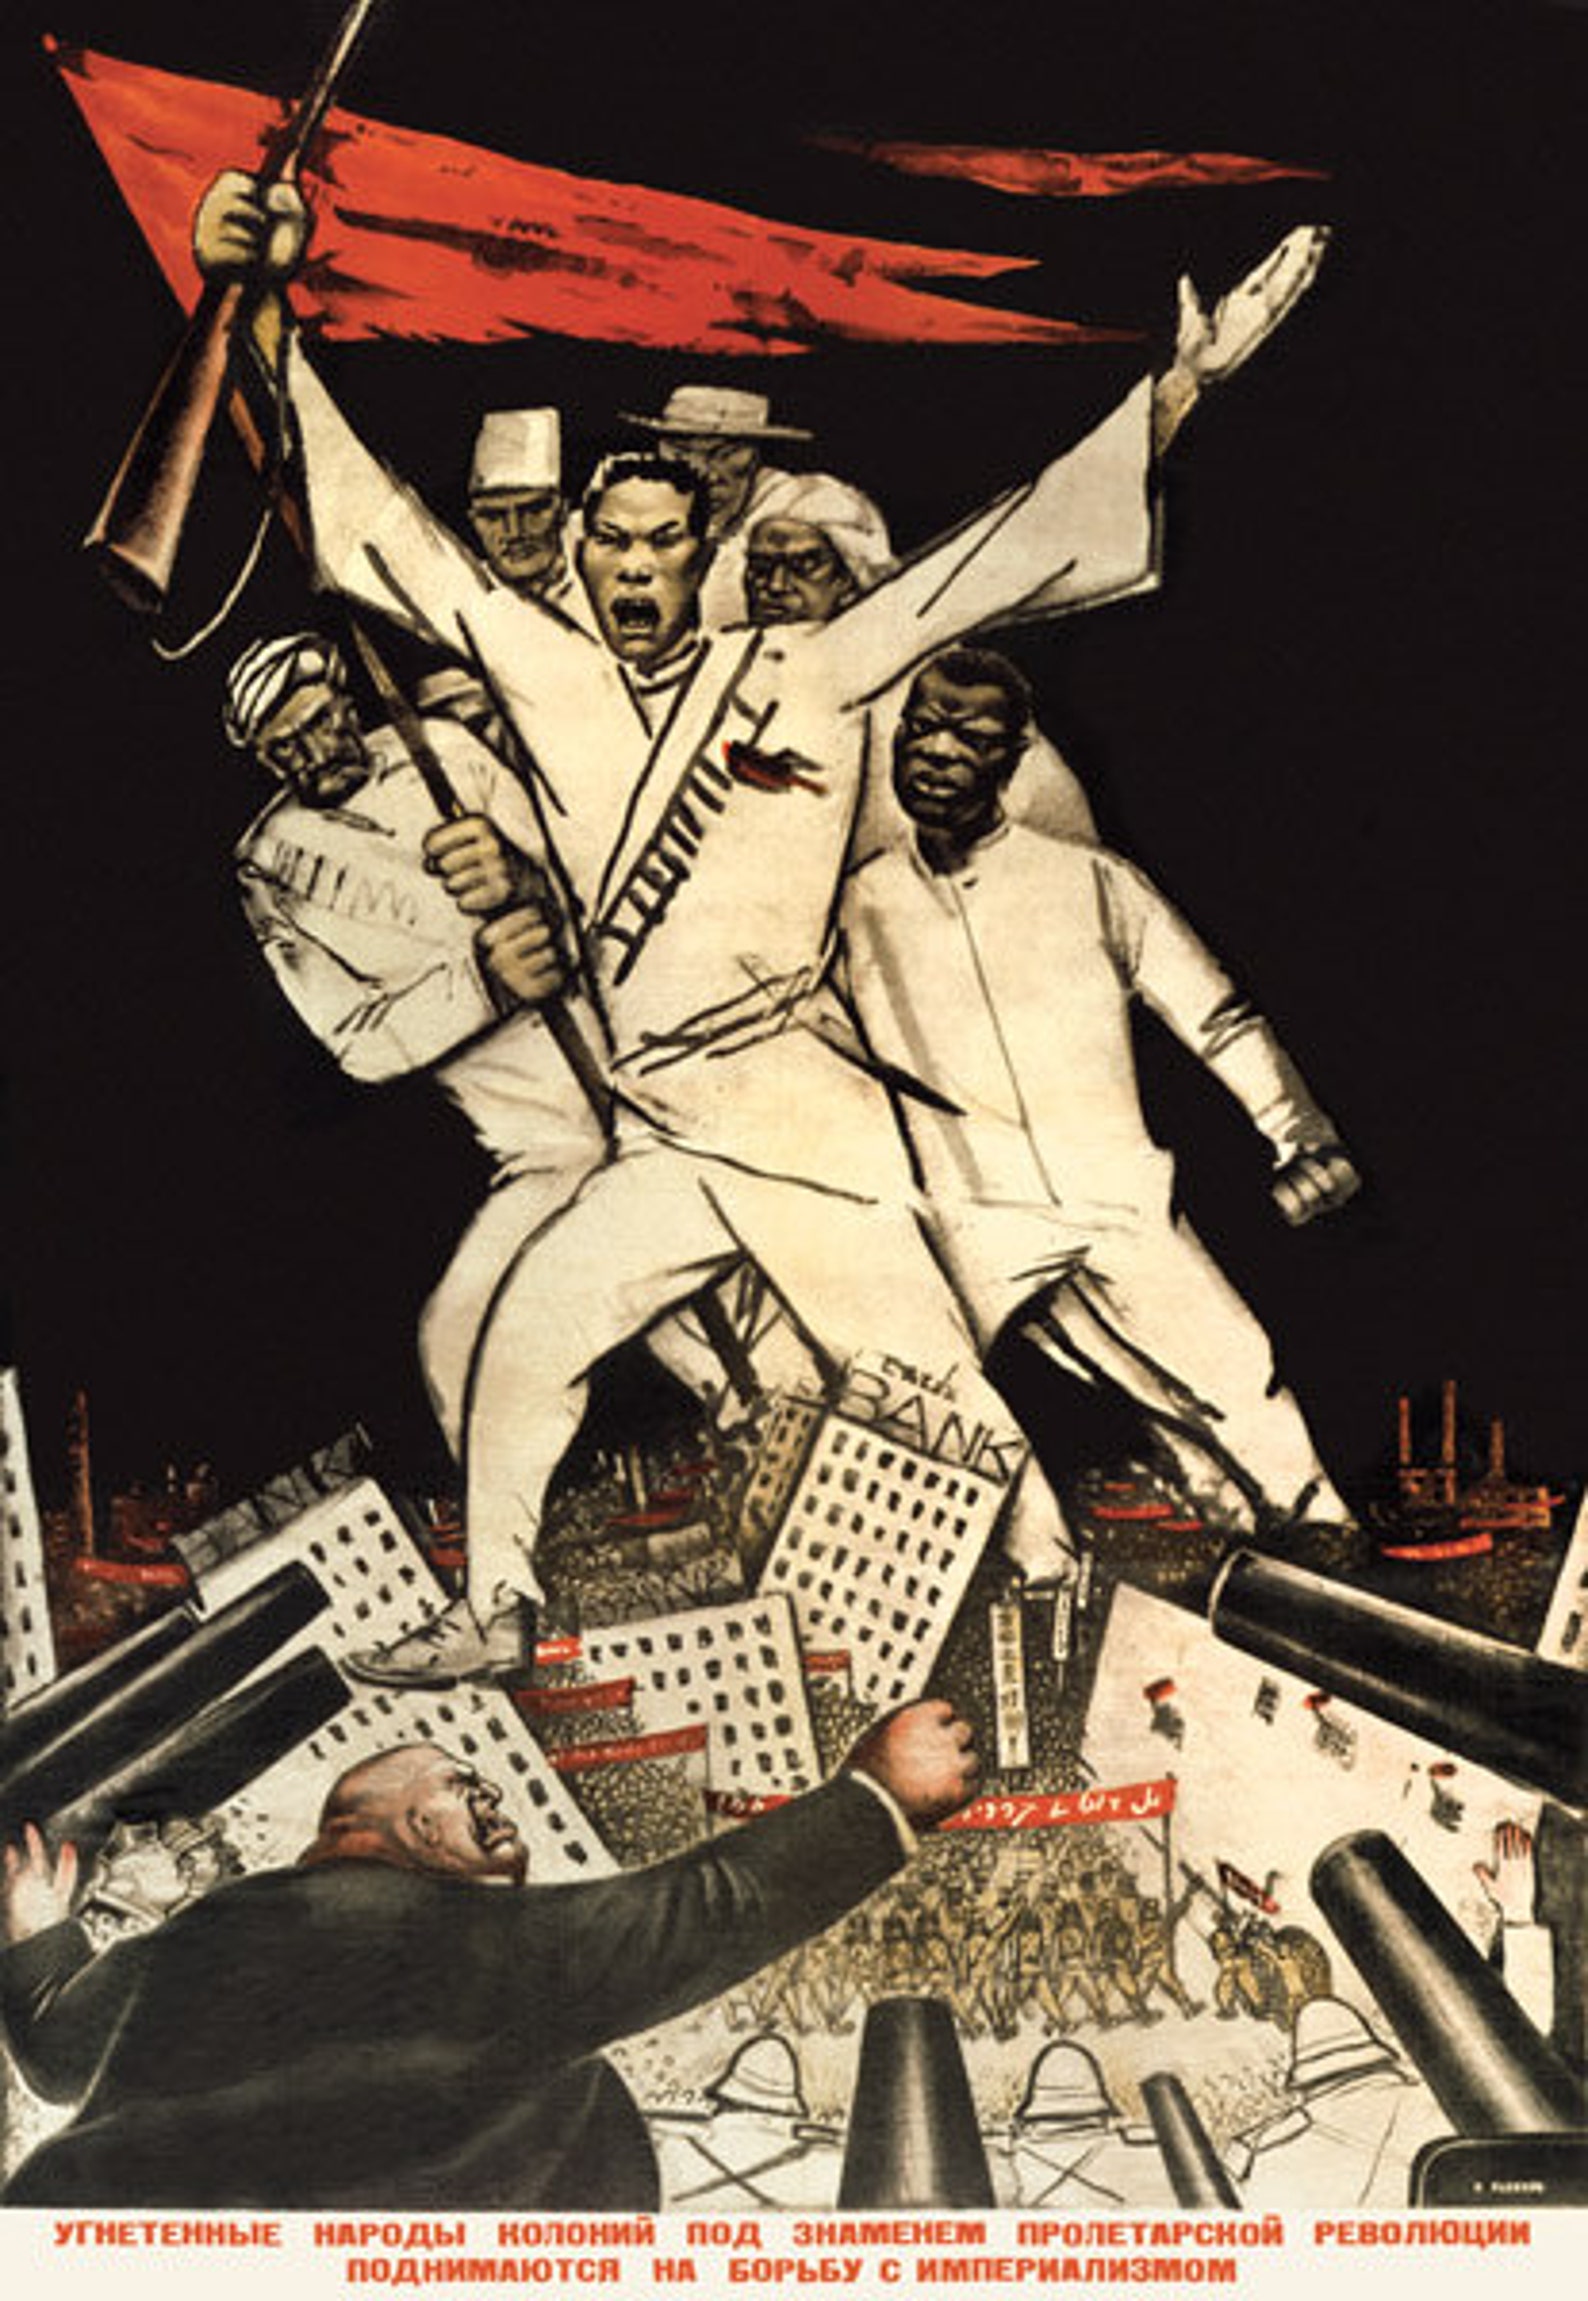 Мировая революция 1920. Плакаты Октябрьской революции 1917. Мировая Коммунистическая революция. Мировая революция пролетариата.